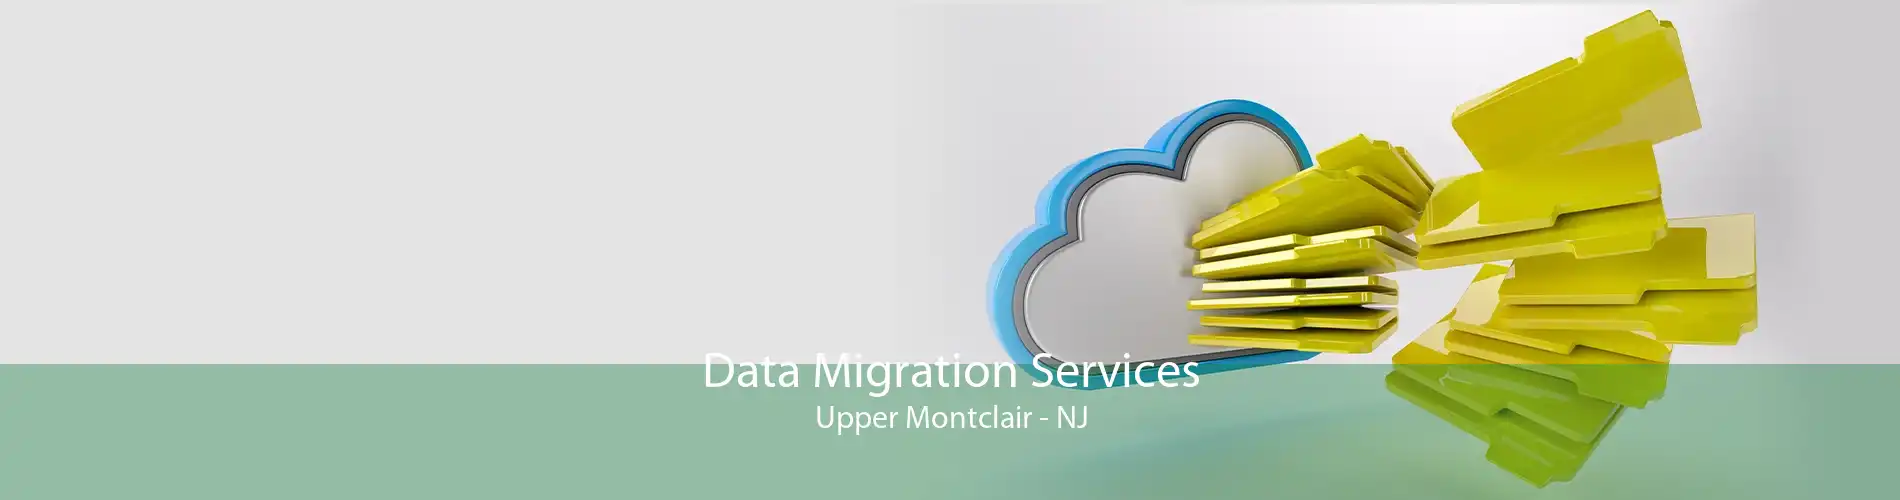 Data Migration Services Upper Montclair - NJ